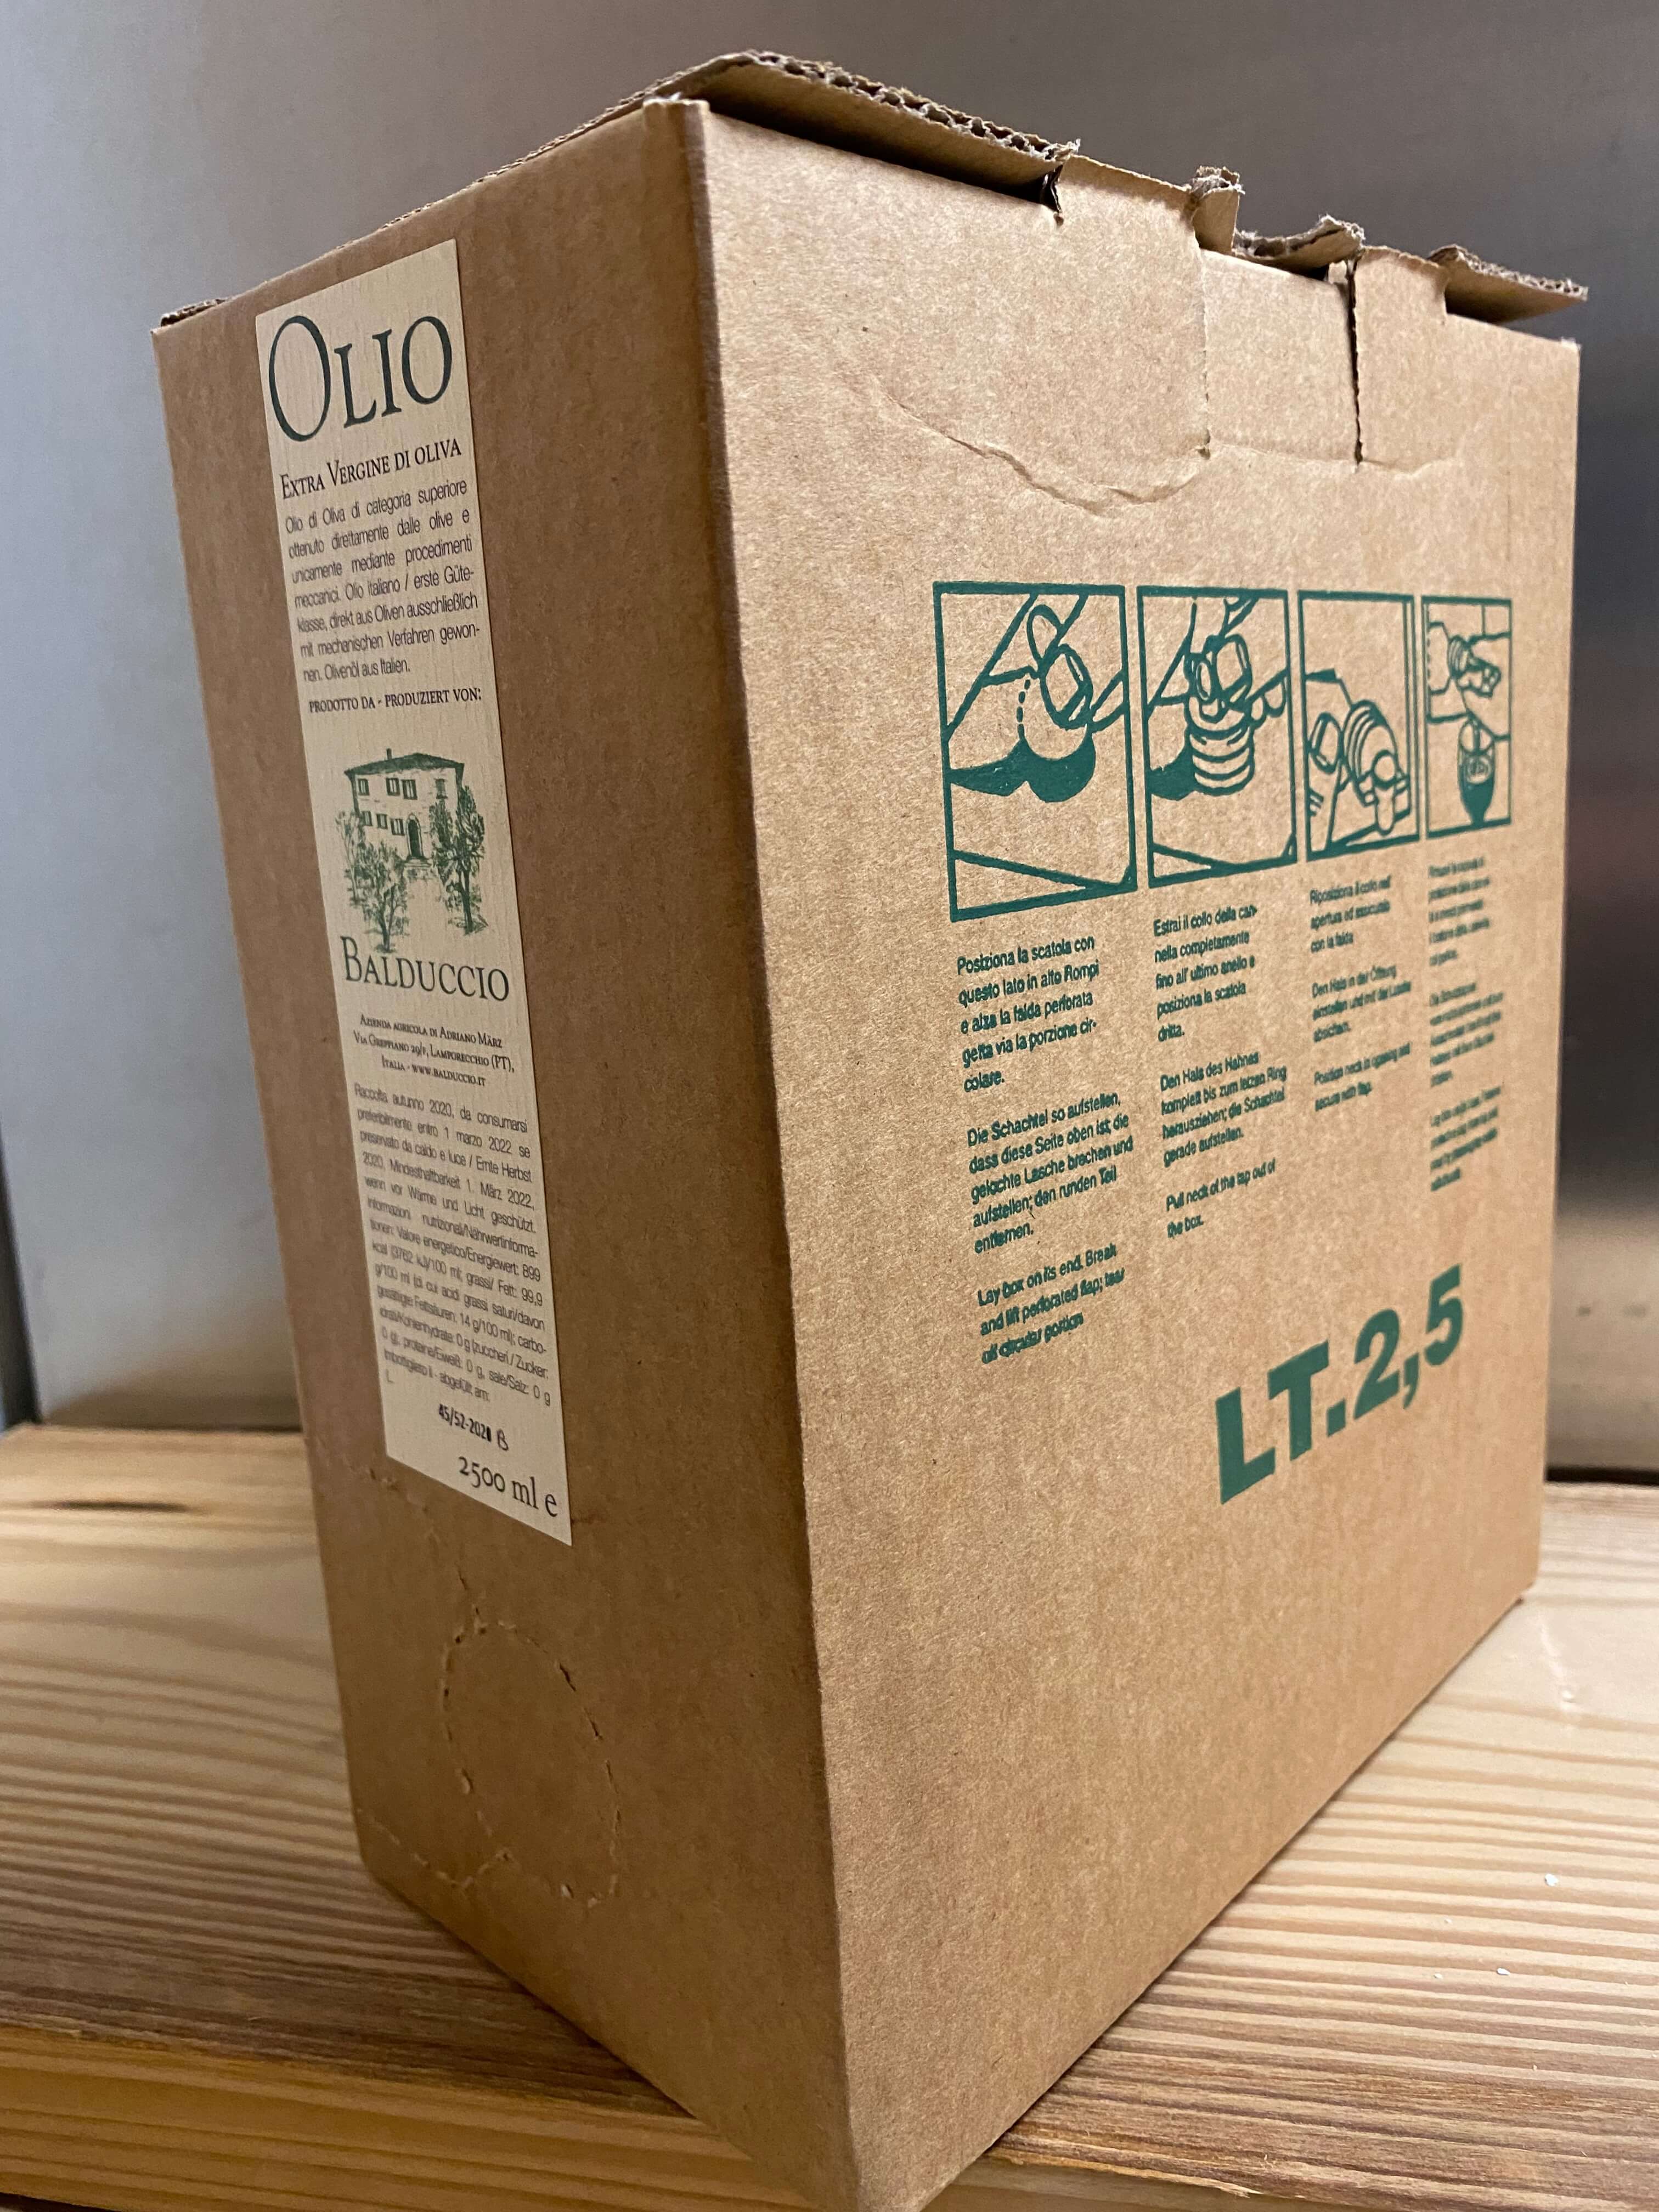 Ernte 2020 Olio extra vergine di Oliva 2,5 l - Balduccio Bag in Box 